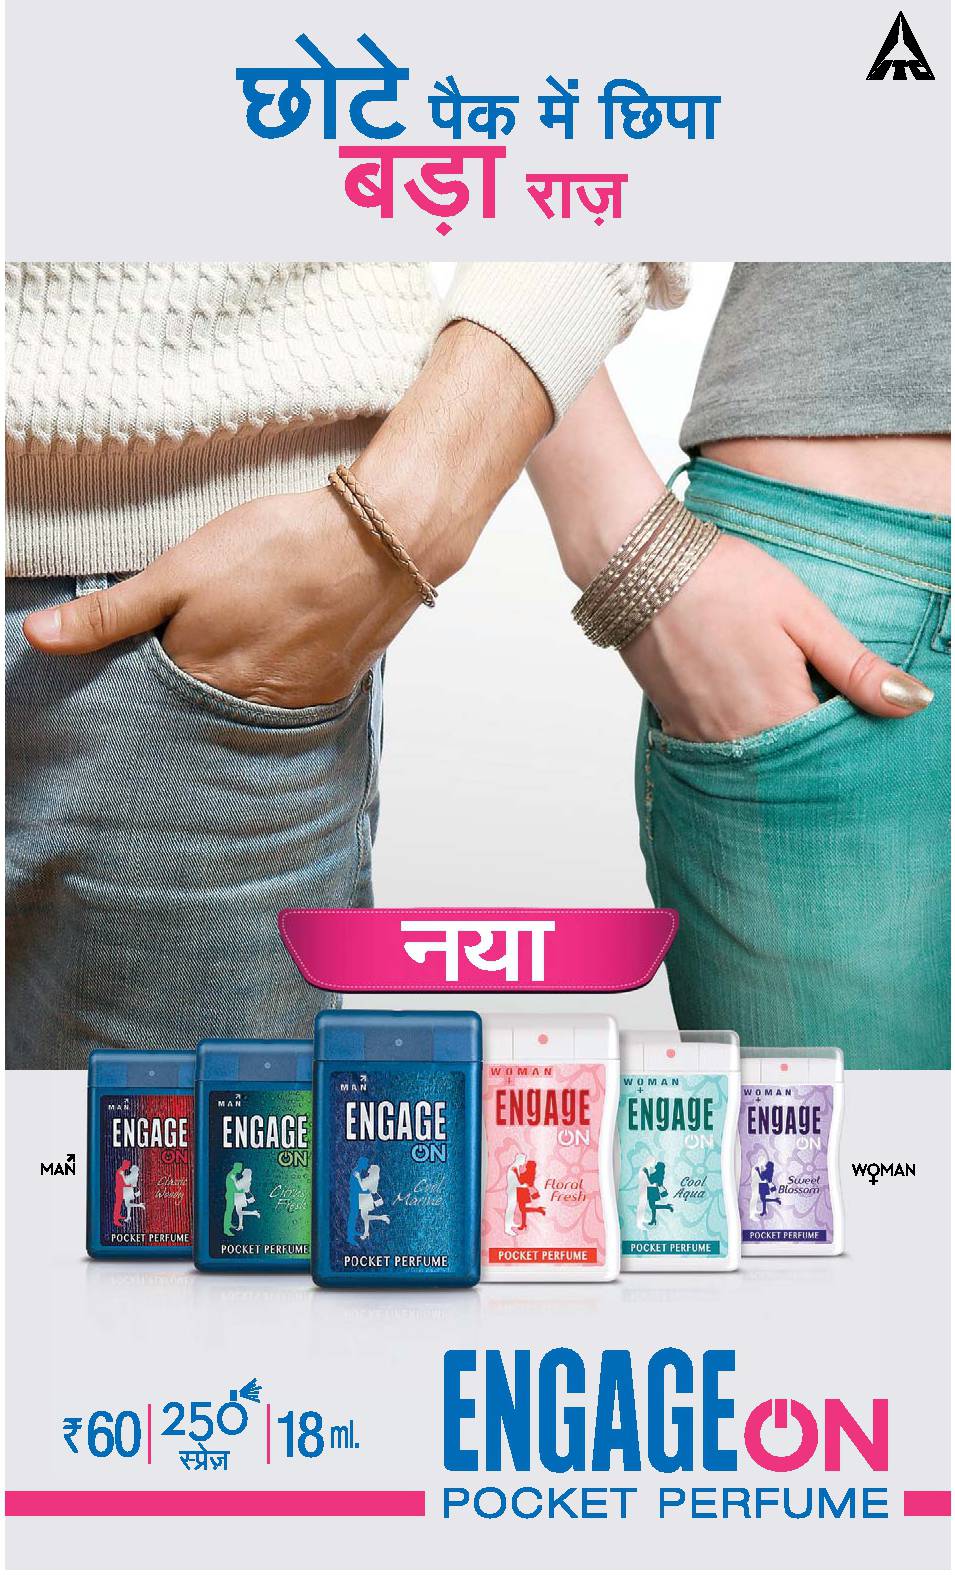 Engage On Pocket Perfume Ad Advert Gallery